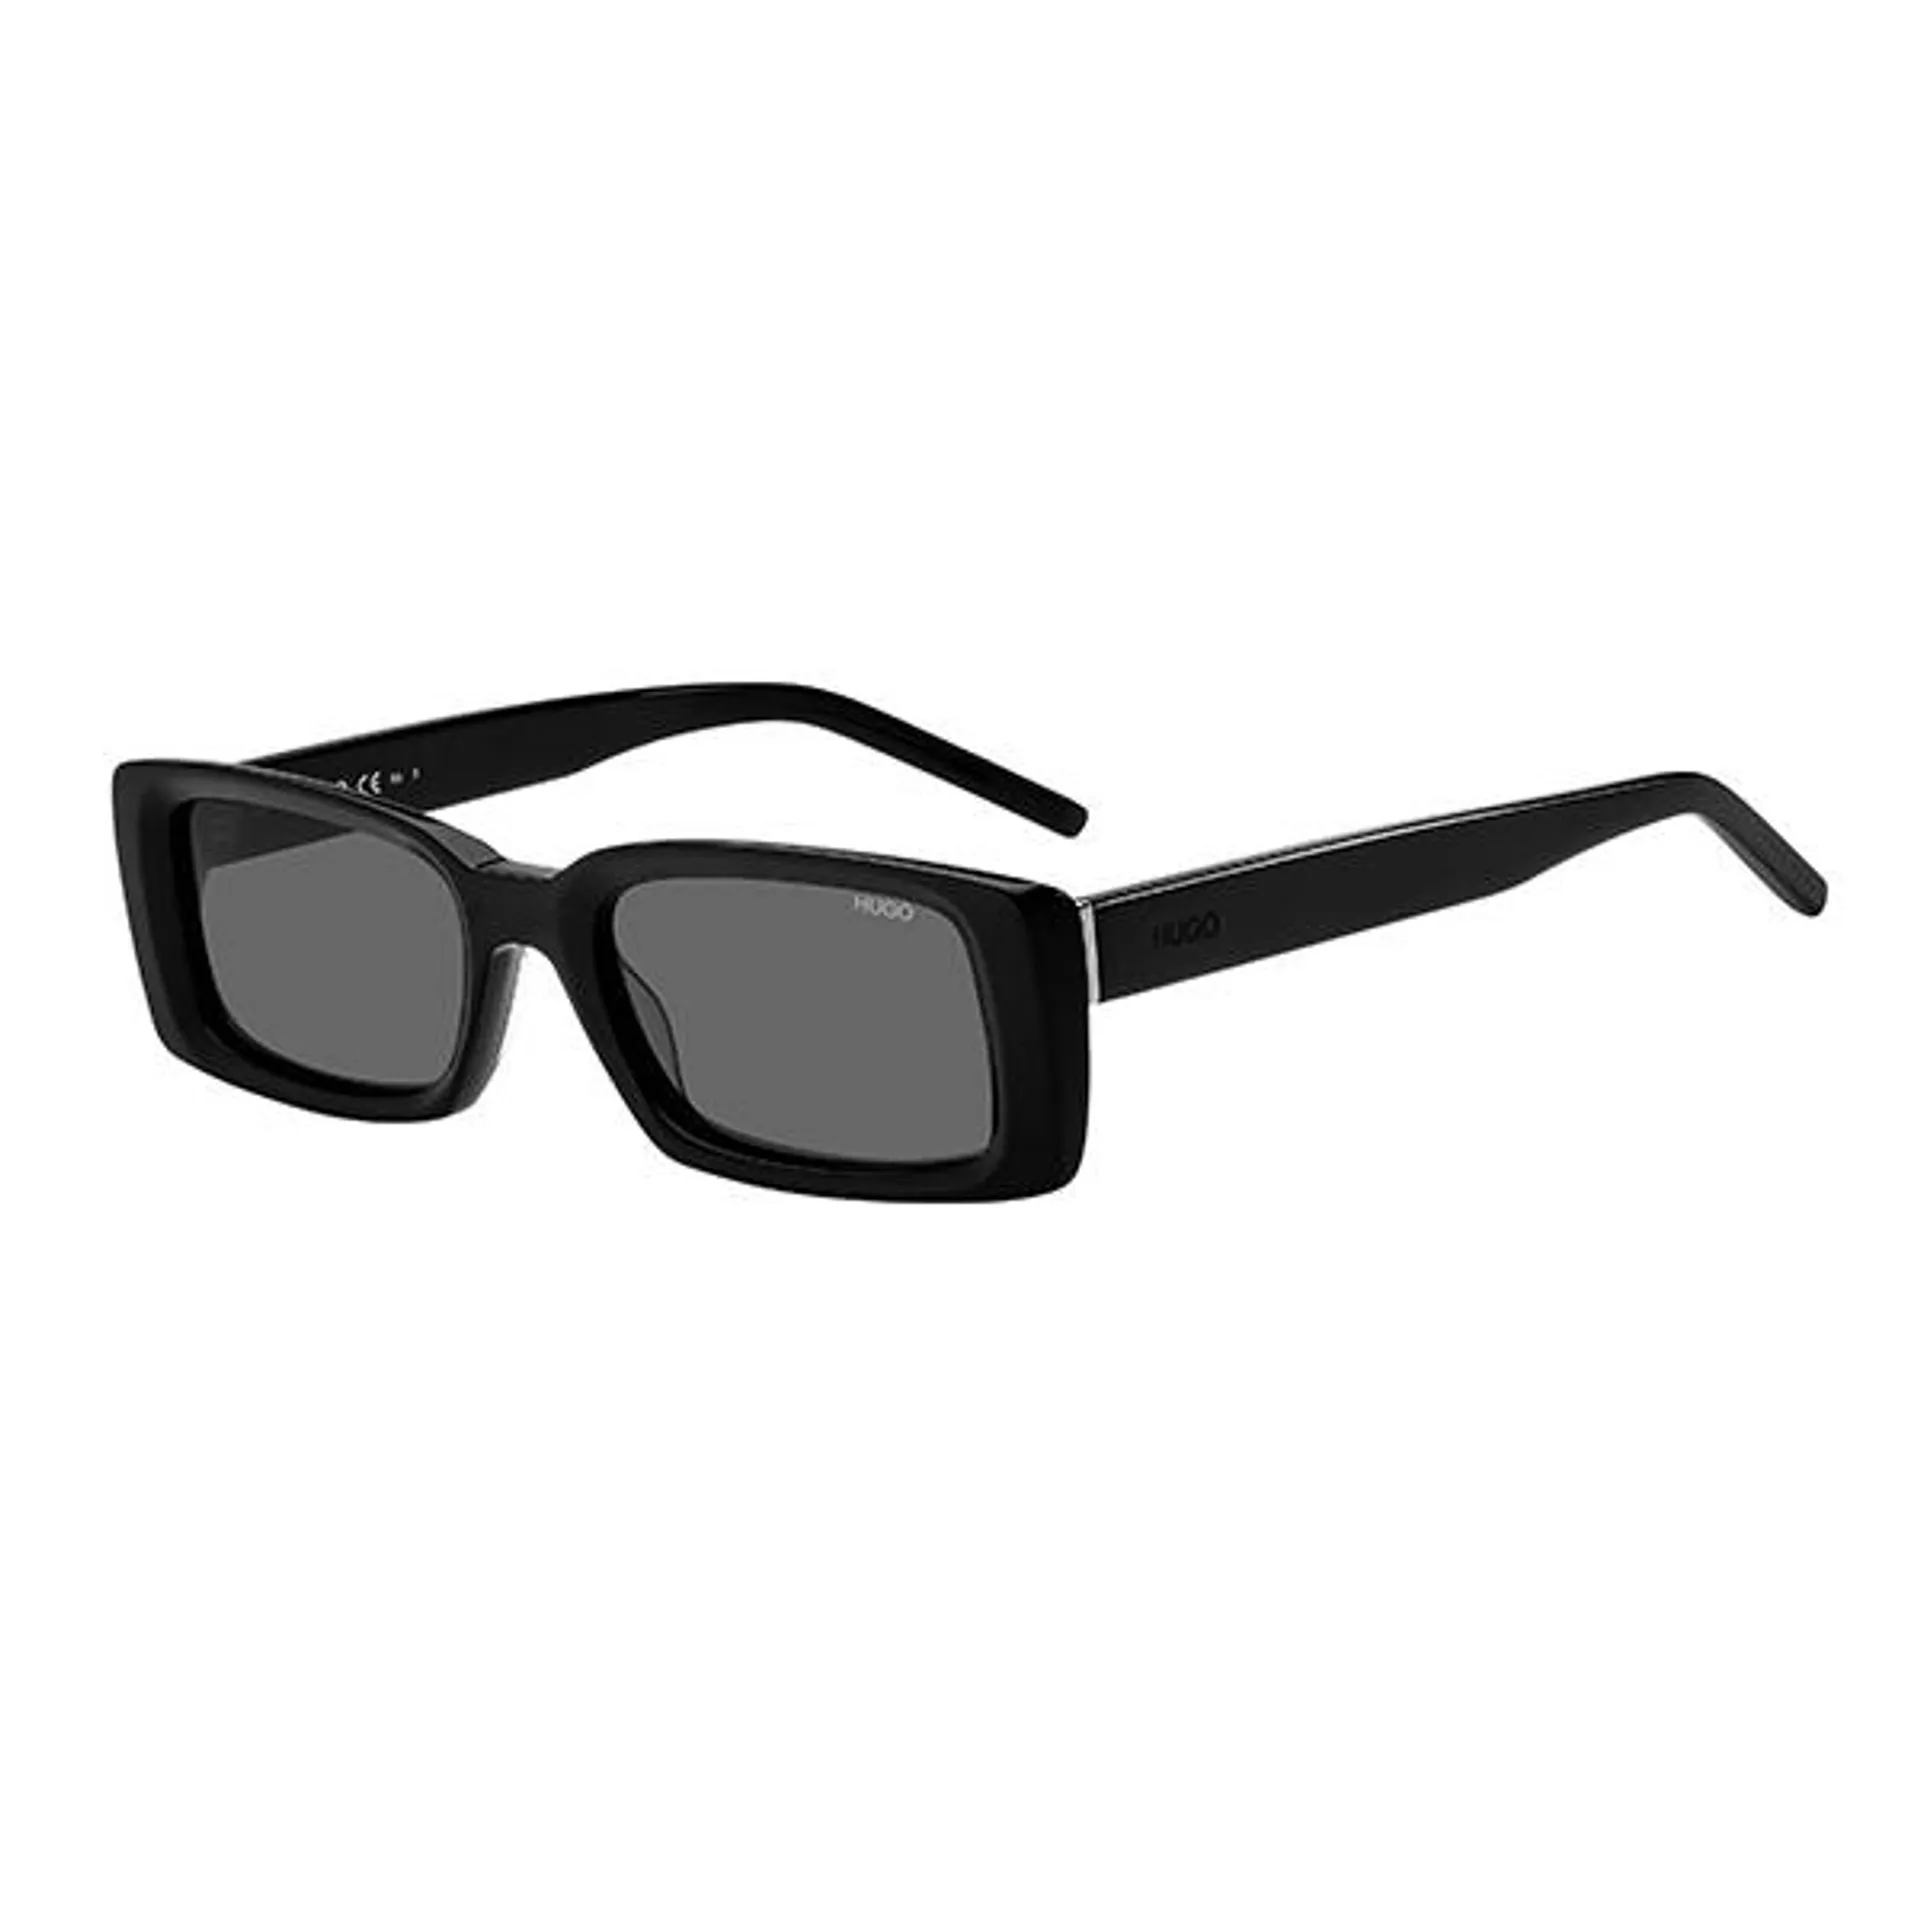 Hugo Boss Women's Black Octagonal Frame Sunglasses